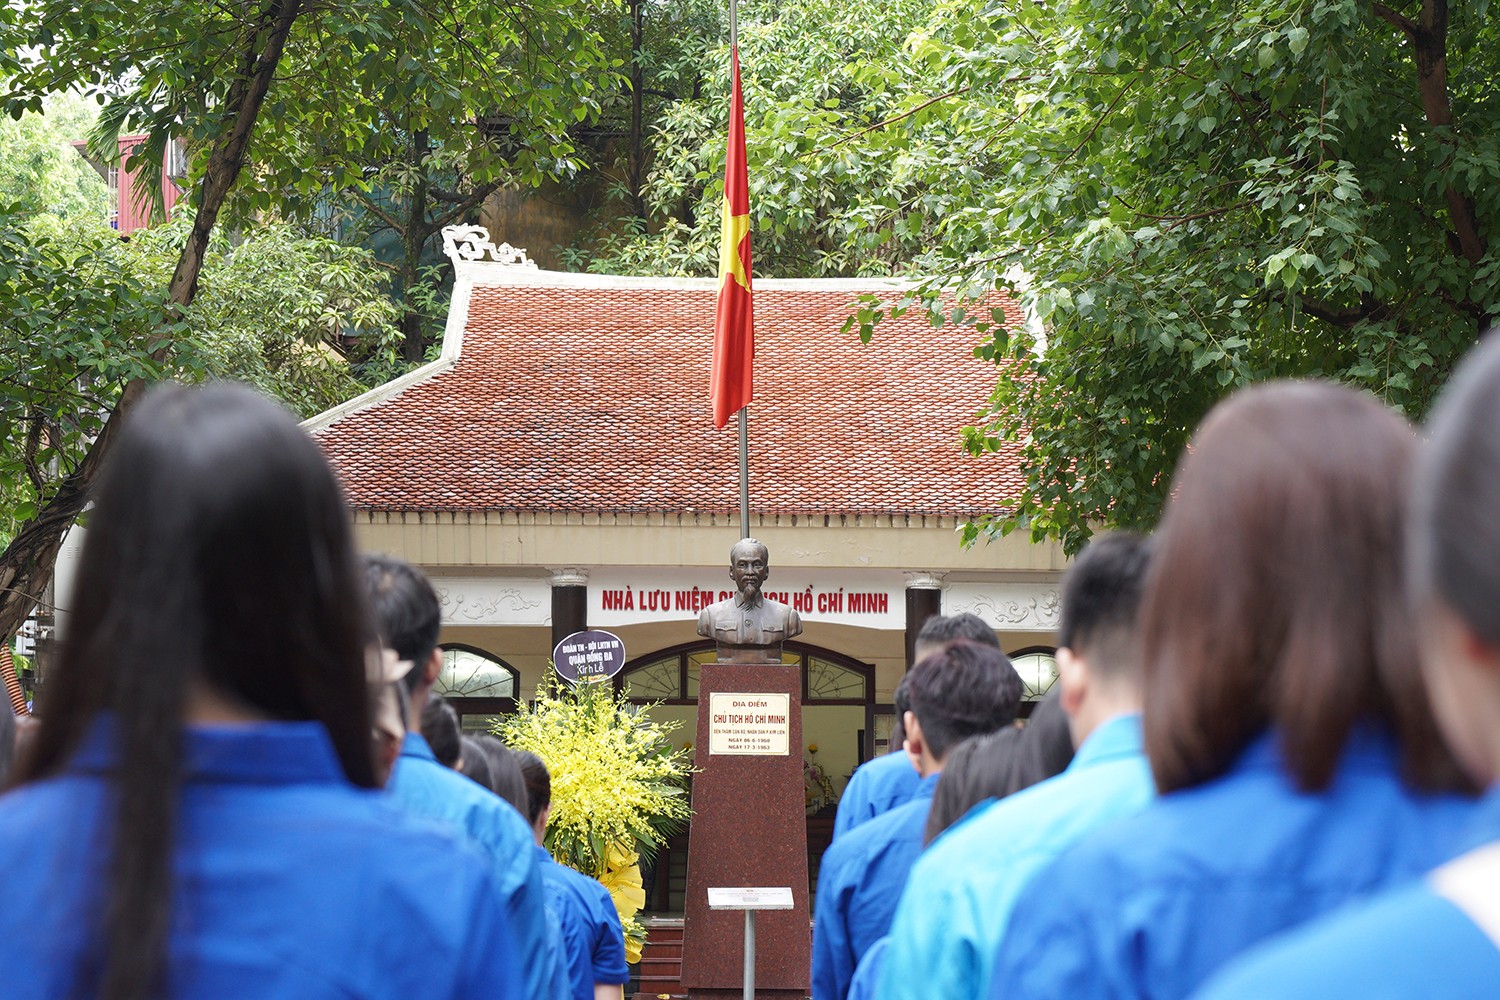 Vào dịp kỷ niệm 100 năm ngày sinh Chủ tịch Hồ Chí Minh (19/5/1990), phường Kim Liên đã xây dựng Khu lưu niệm Bác Hồ tại sân chơi khu nhà B8, nơi Bác đứng nói chuyện với cán bộ và nhân dân Kim Liên năm xưa.